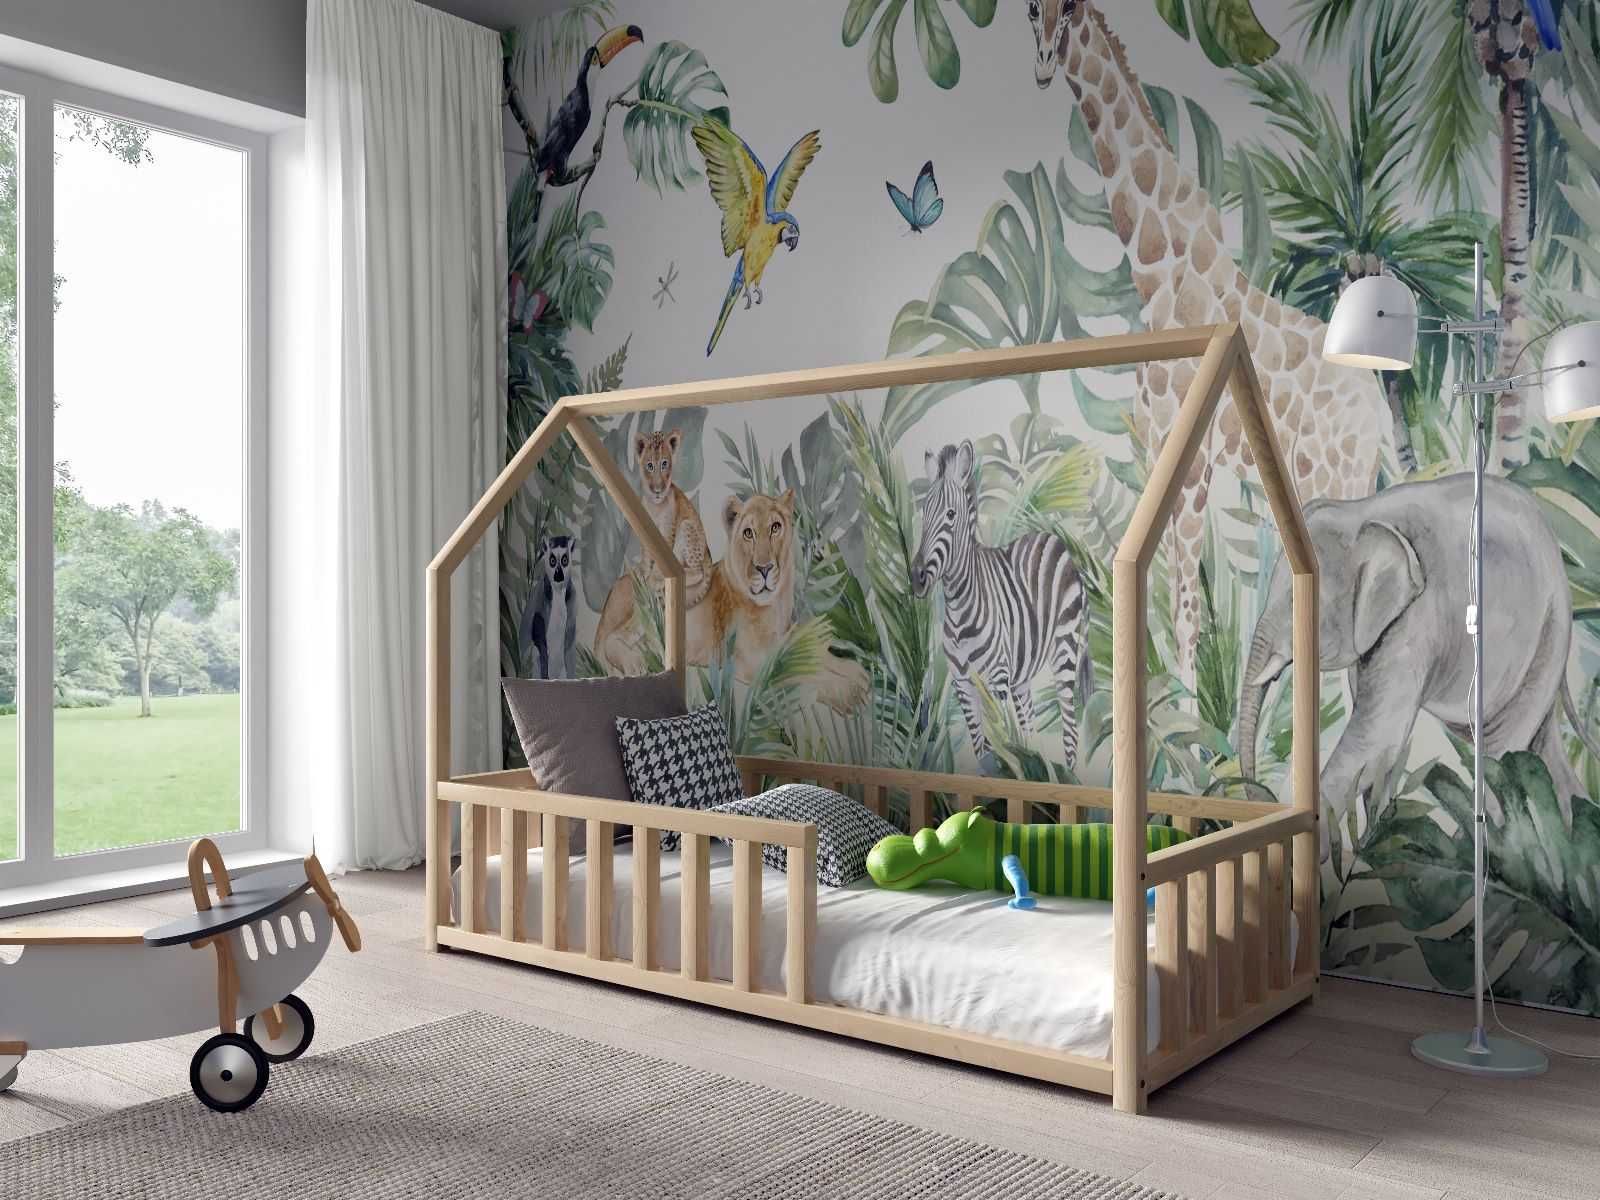 Łóżko dla dzieci domek antoś 160x80 - materac w zestawie GRATIS